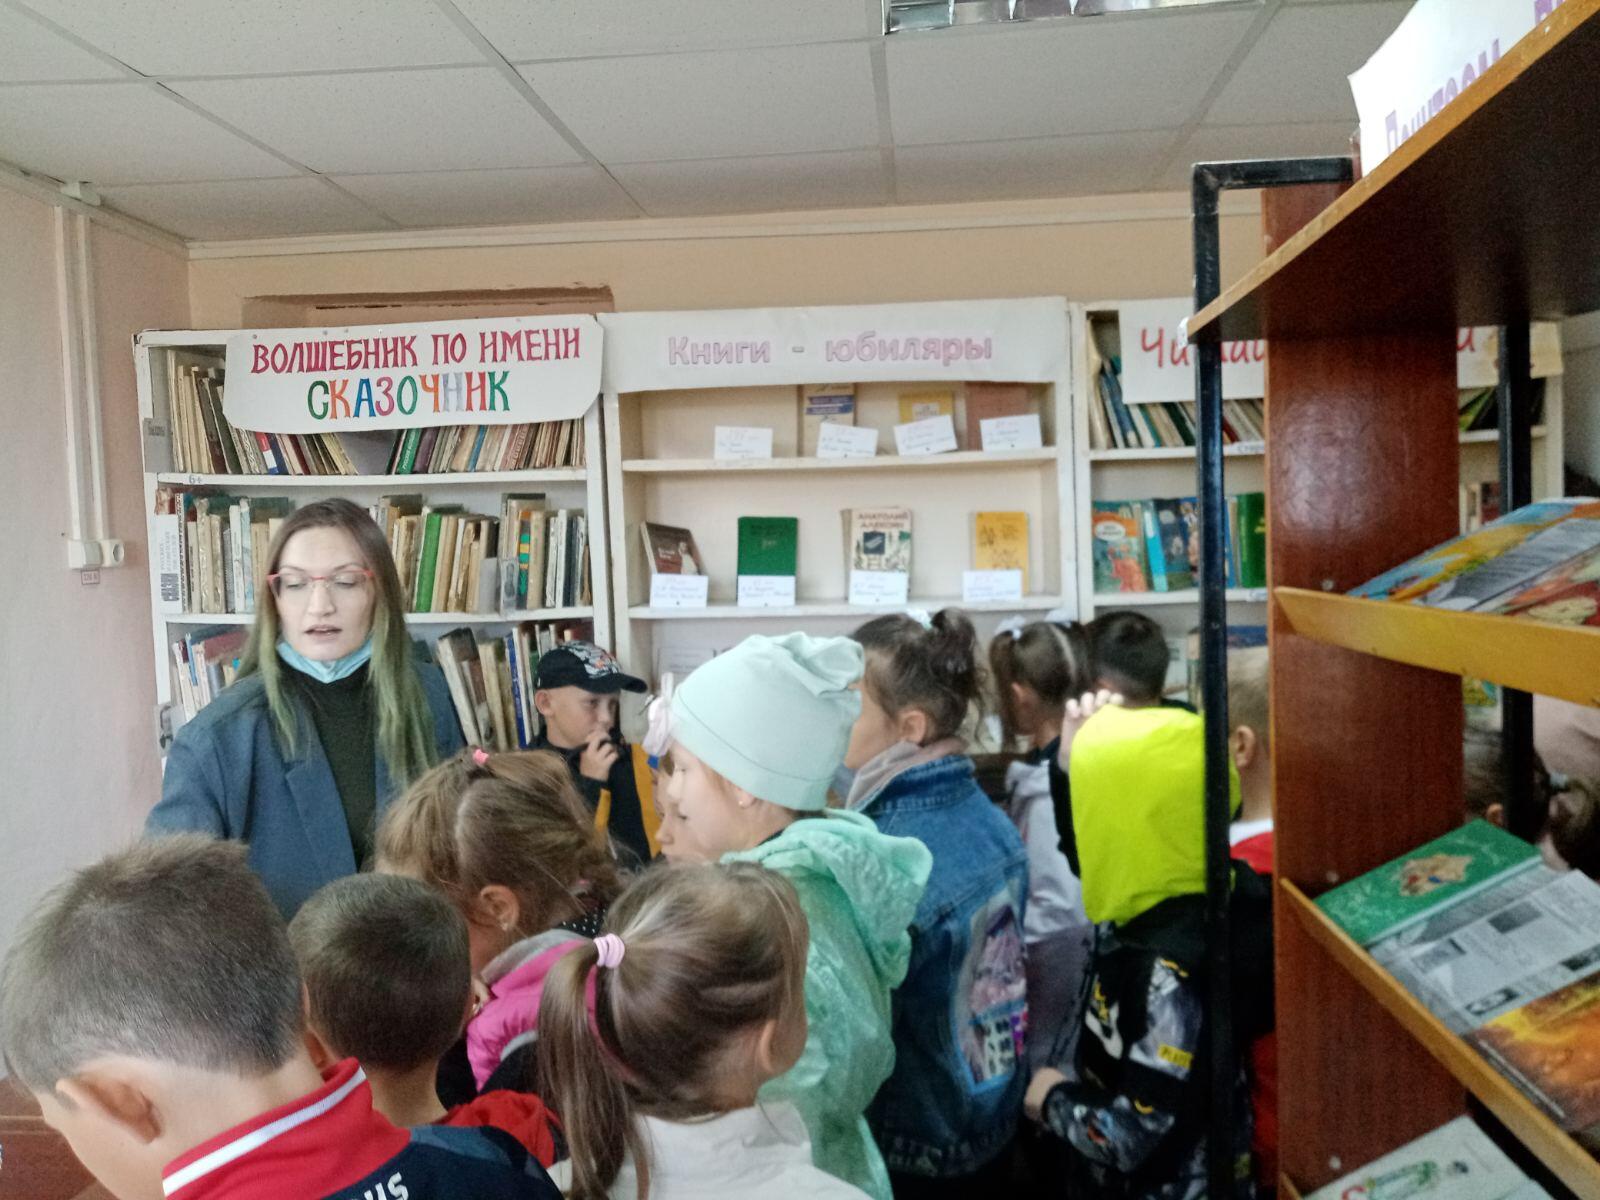 Детская библиотека Даля Нижний Новгород. Библиотека встречает гостей. Стань читателем дружок. Акция Стань читателем.